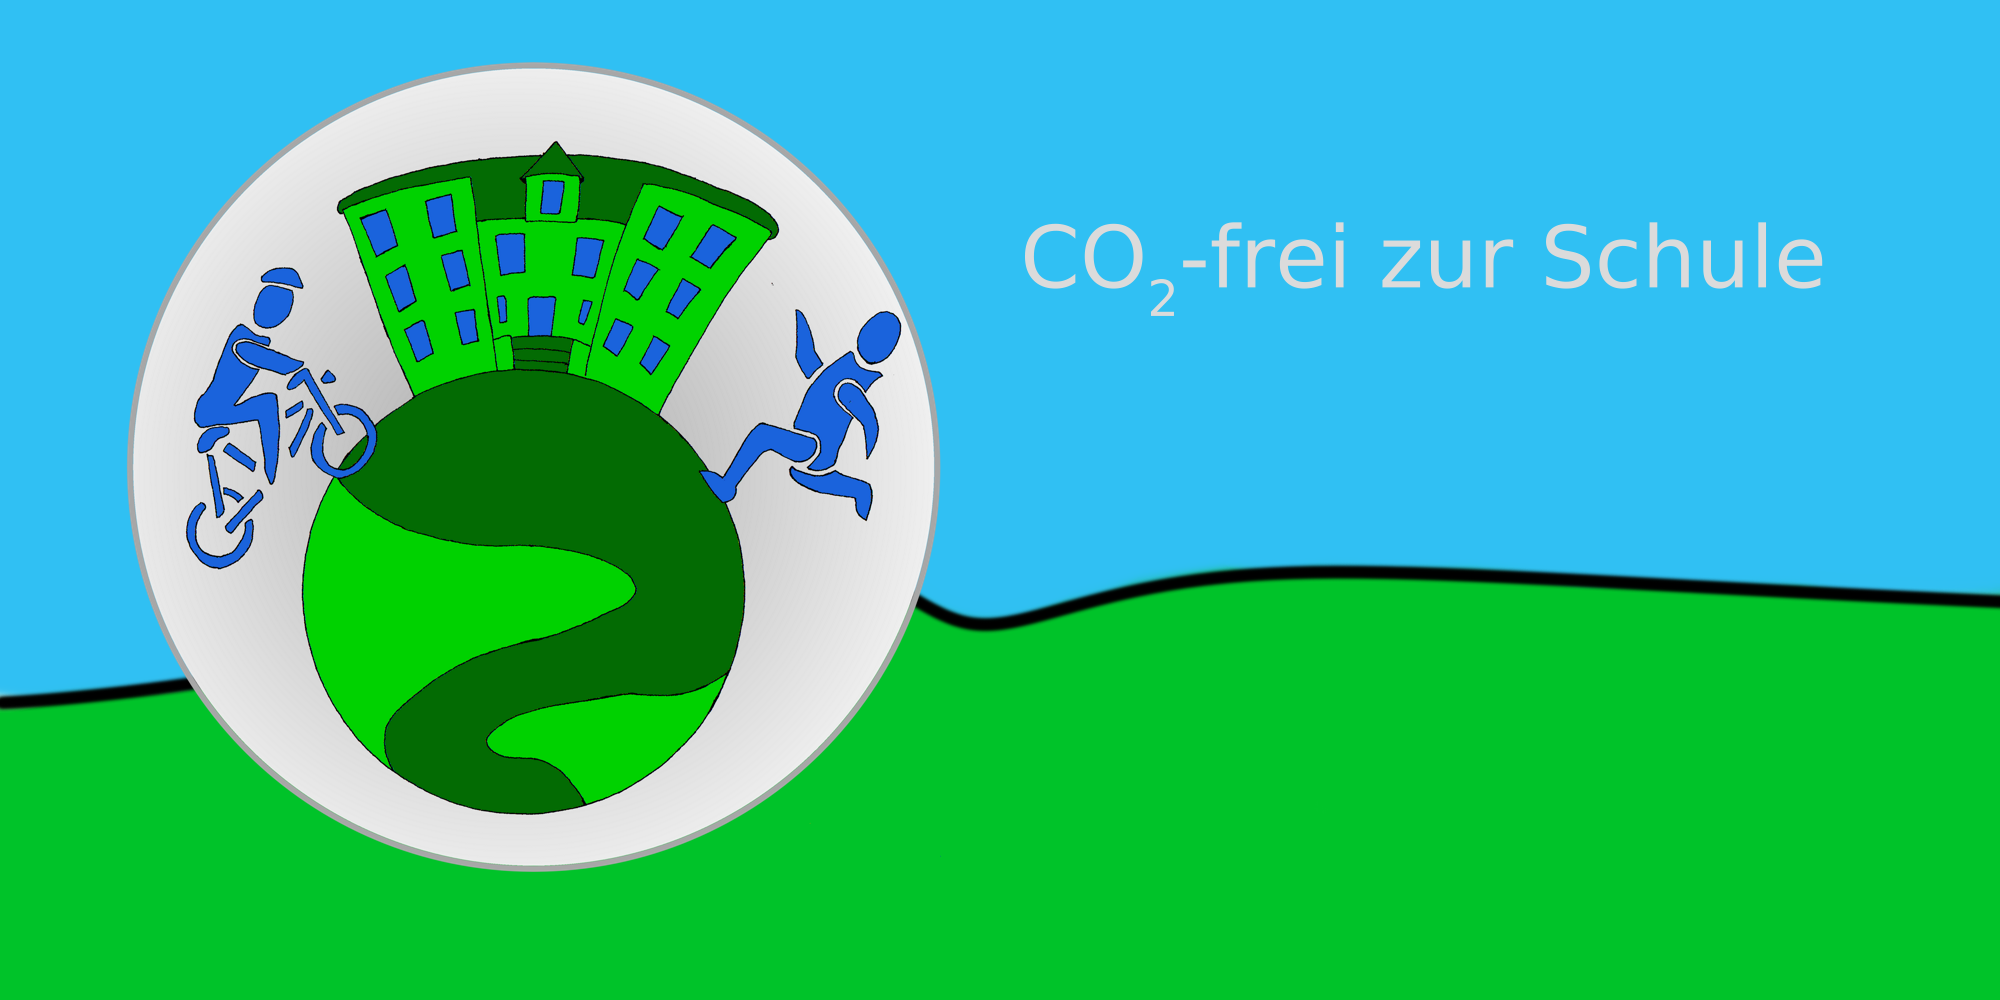 CO2-frei zur Schule